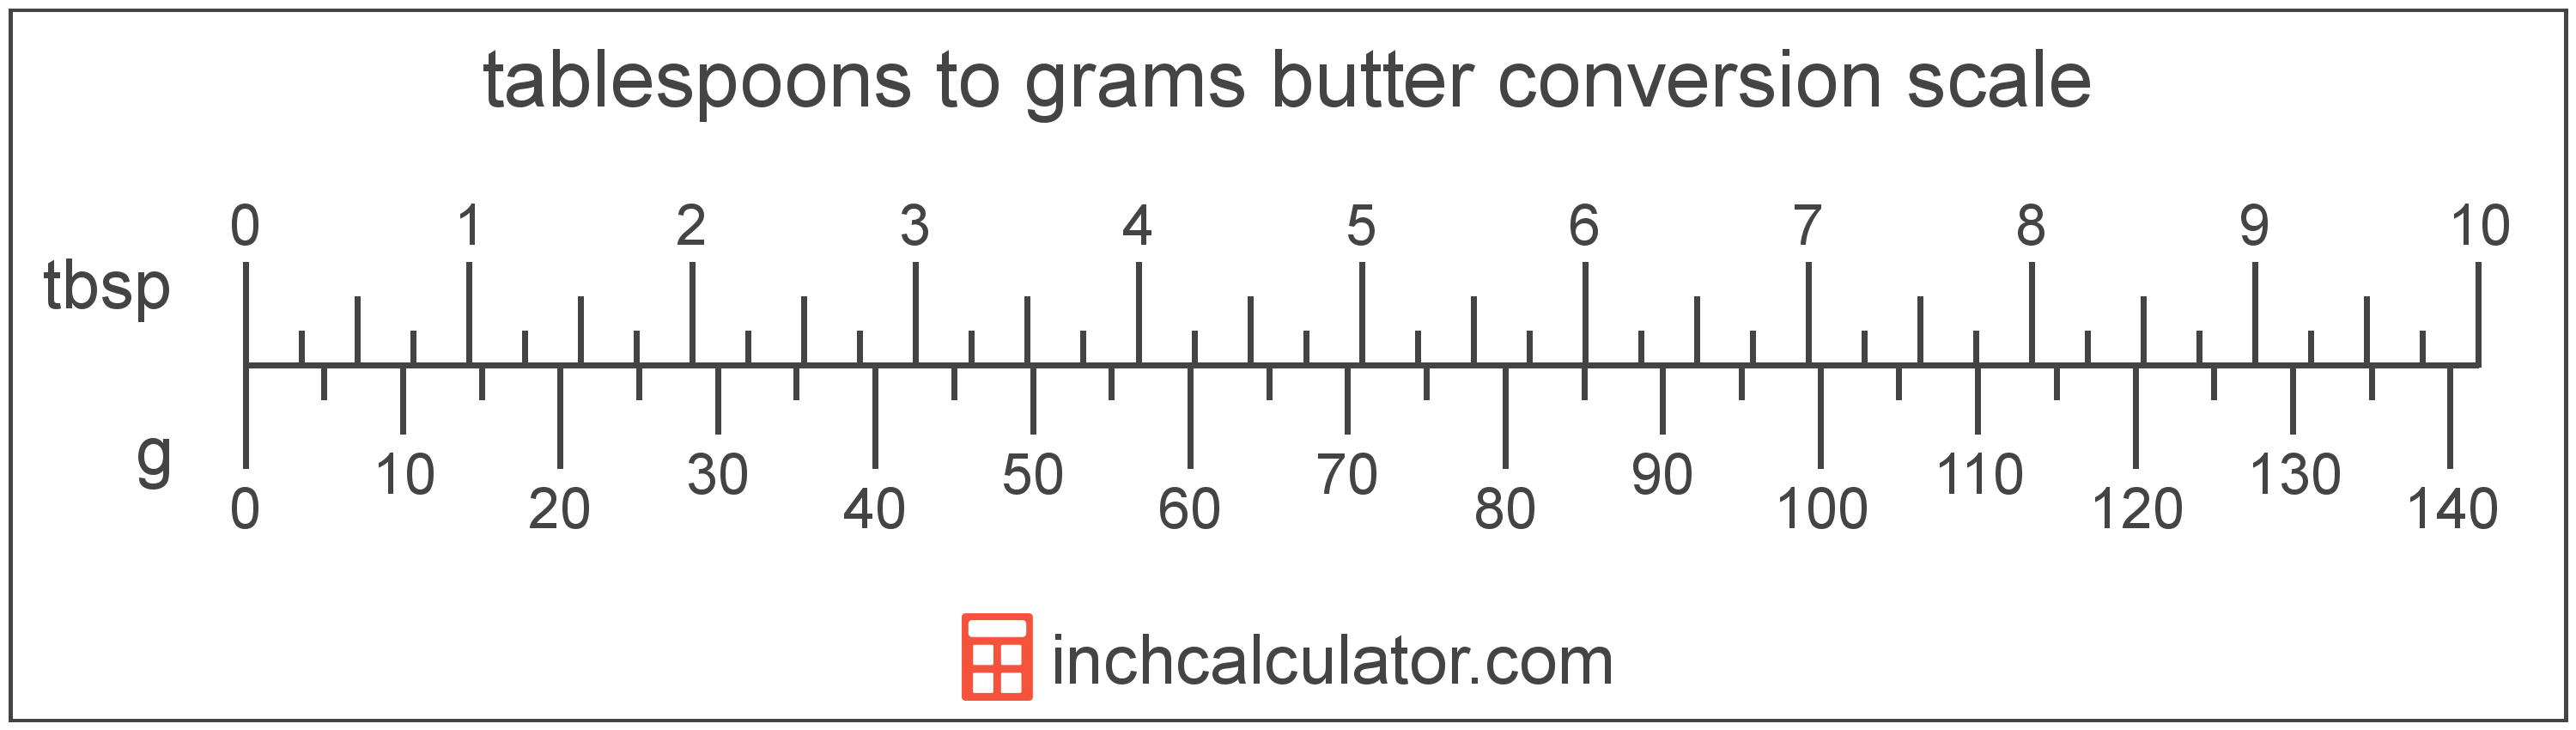 Stick Butter Conversion Chart